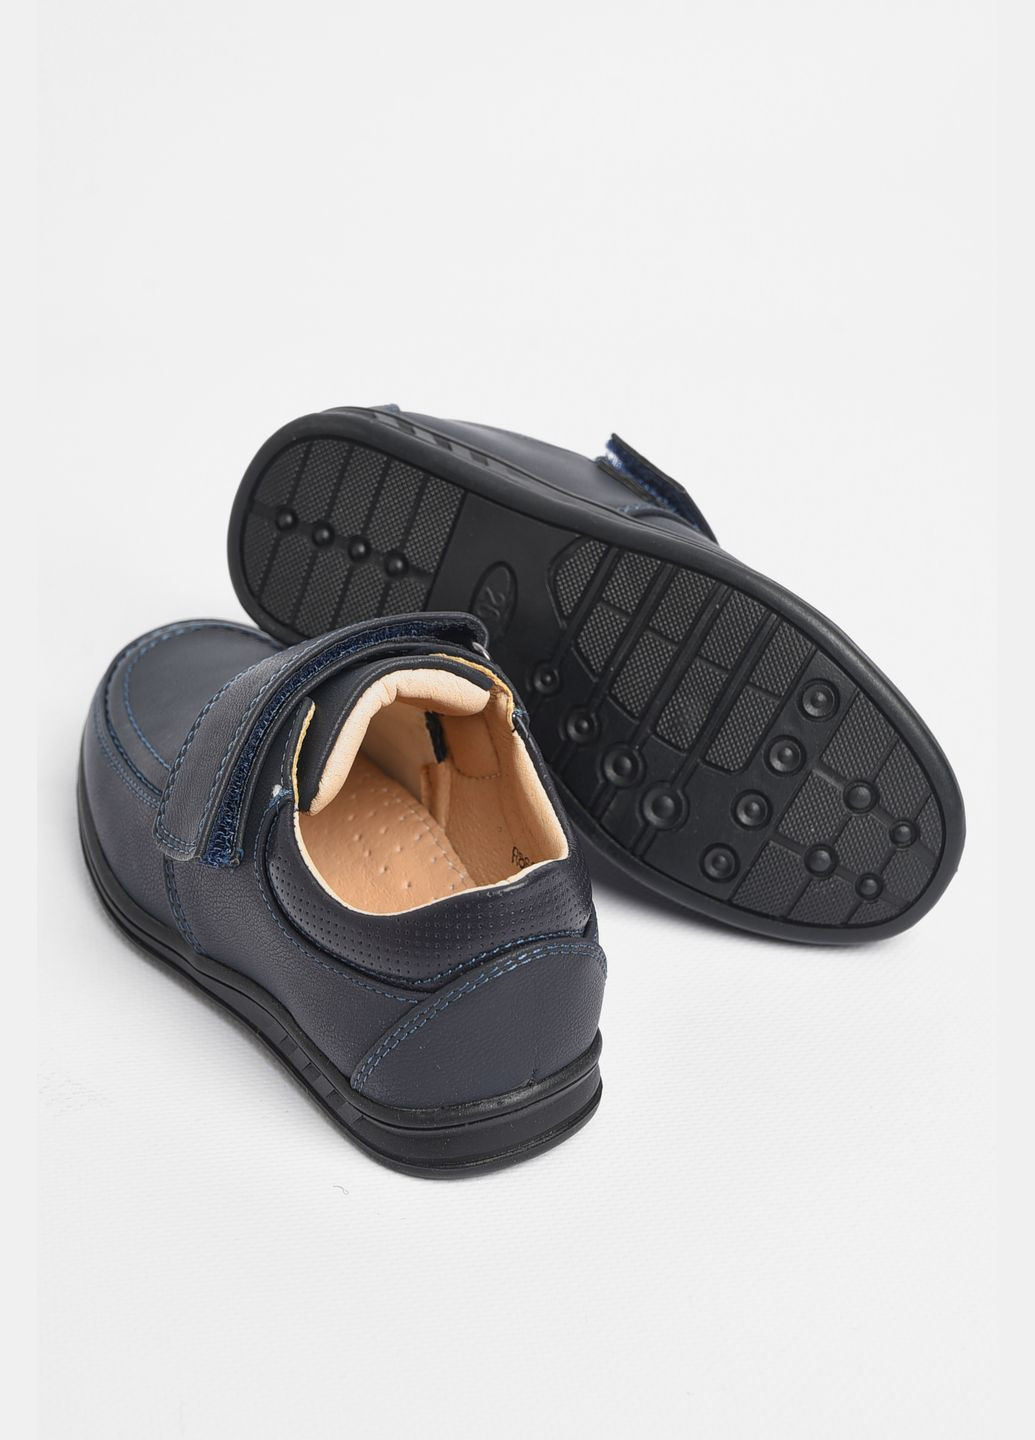 Темно-синие туфли детские для мальчика темно-синего цвета без шнурков Let's Shop